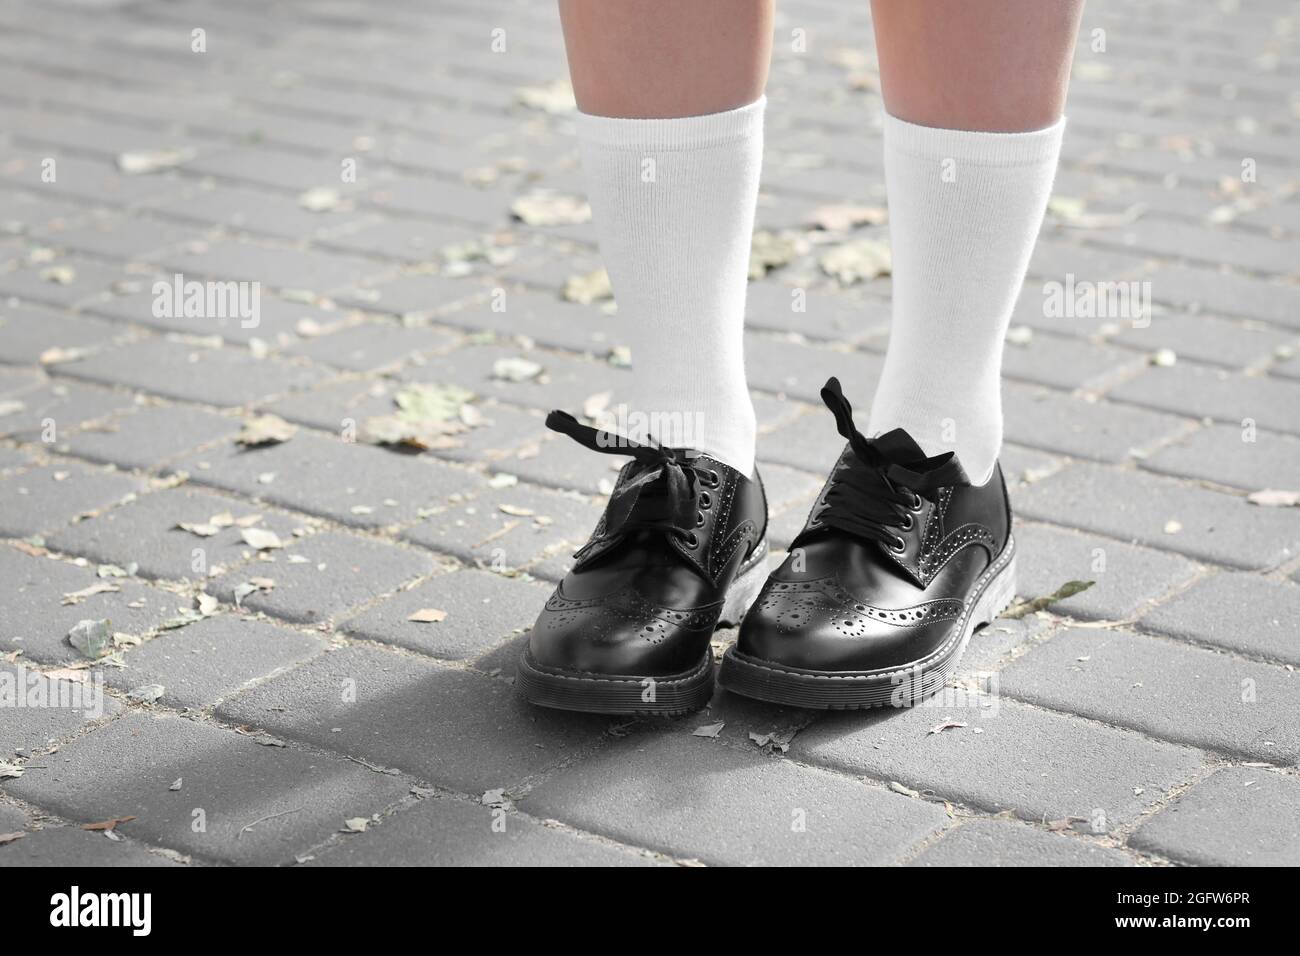 Feet of schoolgirl in uniform outdoors Stock Photo - Alamy